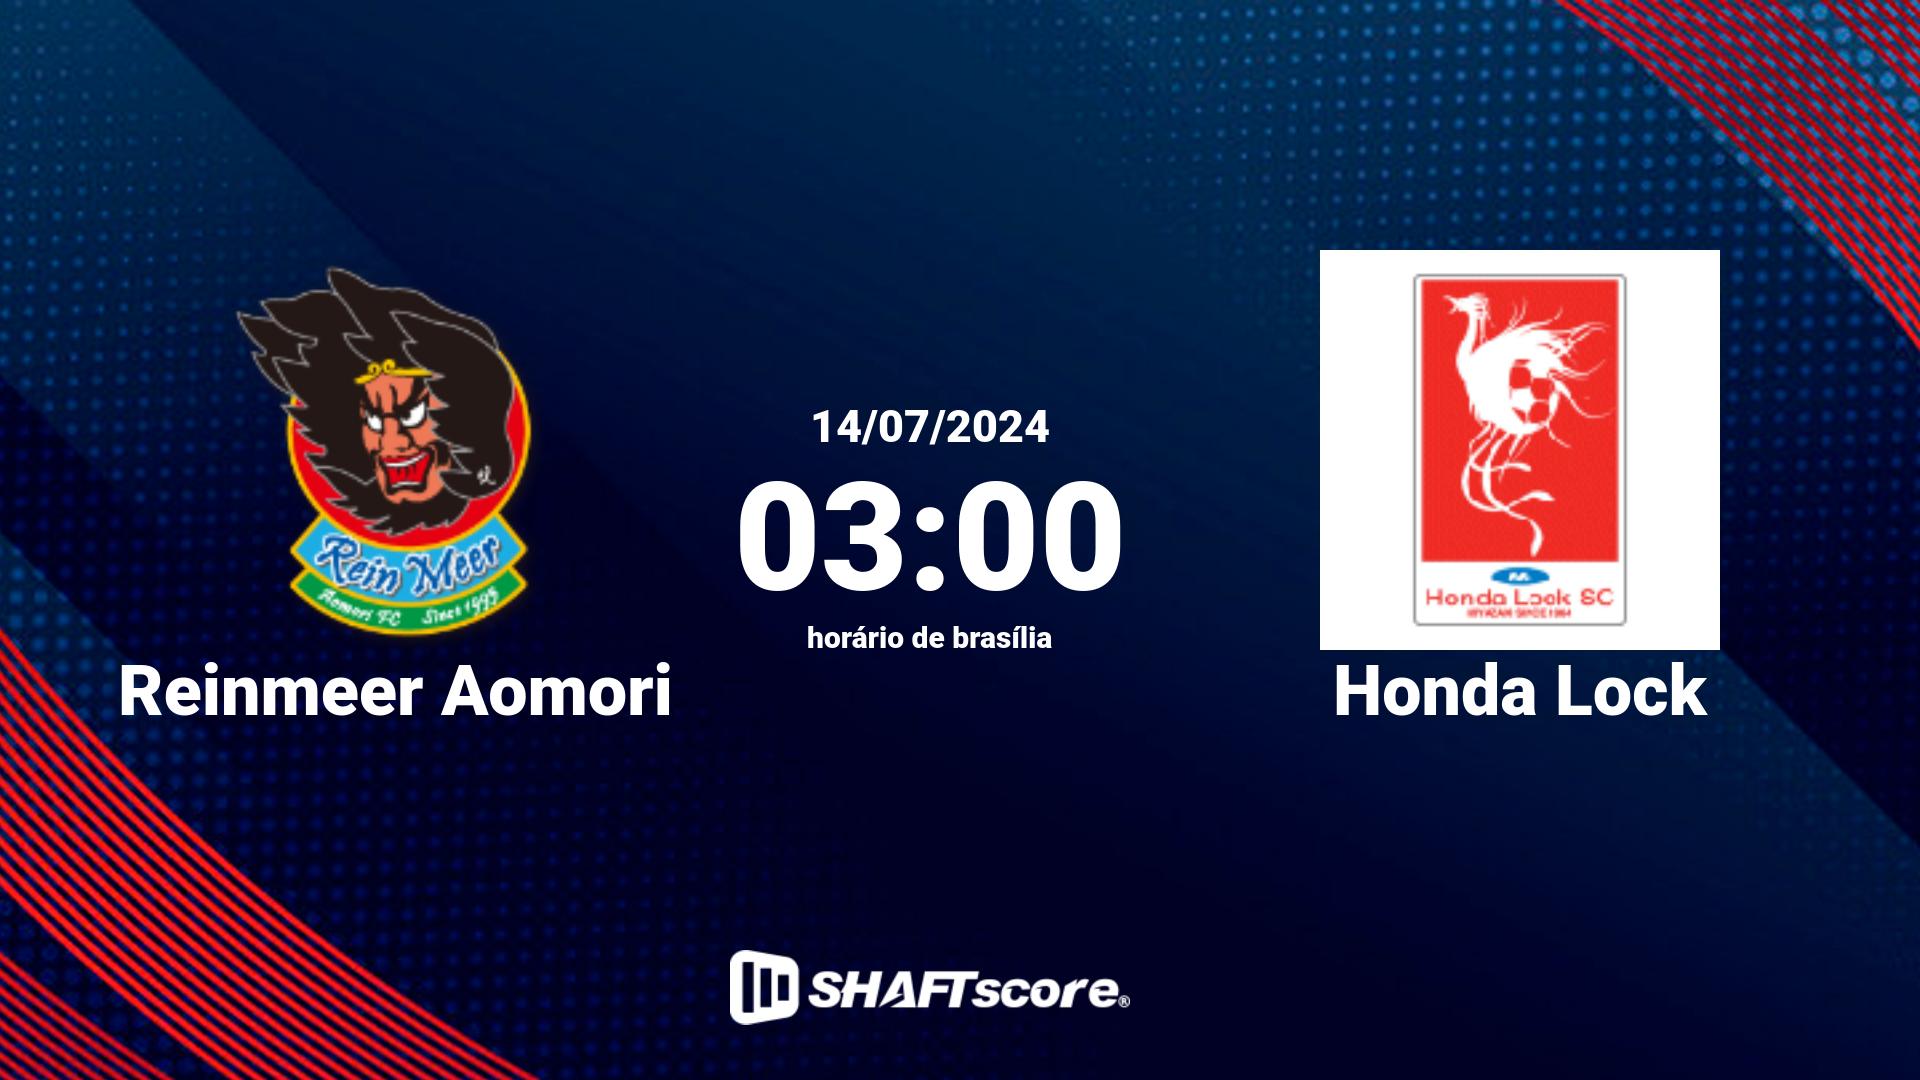 Estatísticas do jogo Reinmeer Aomori vs Honda Lock 14.07 03:00